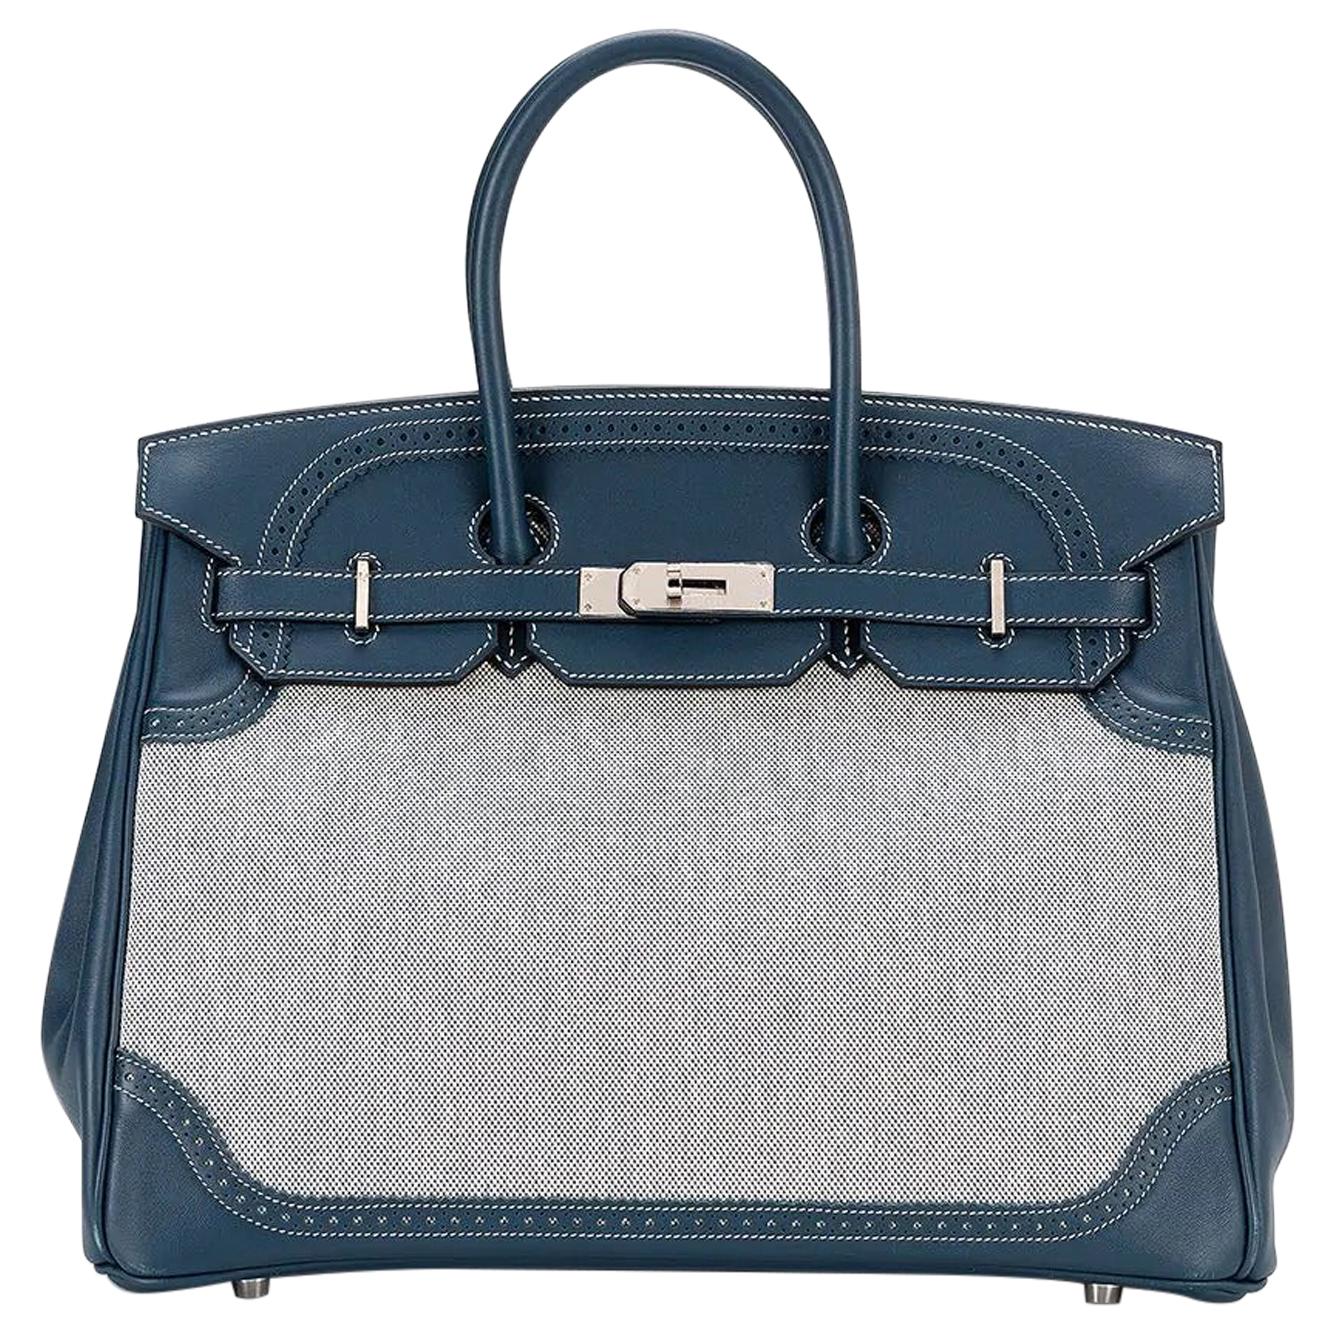 Hermès Limited Edition Bleu de Prusse Swift 35 Birkin Bag